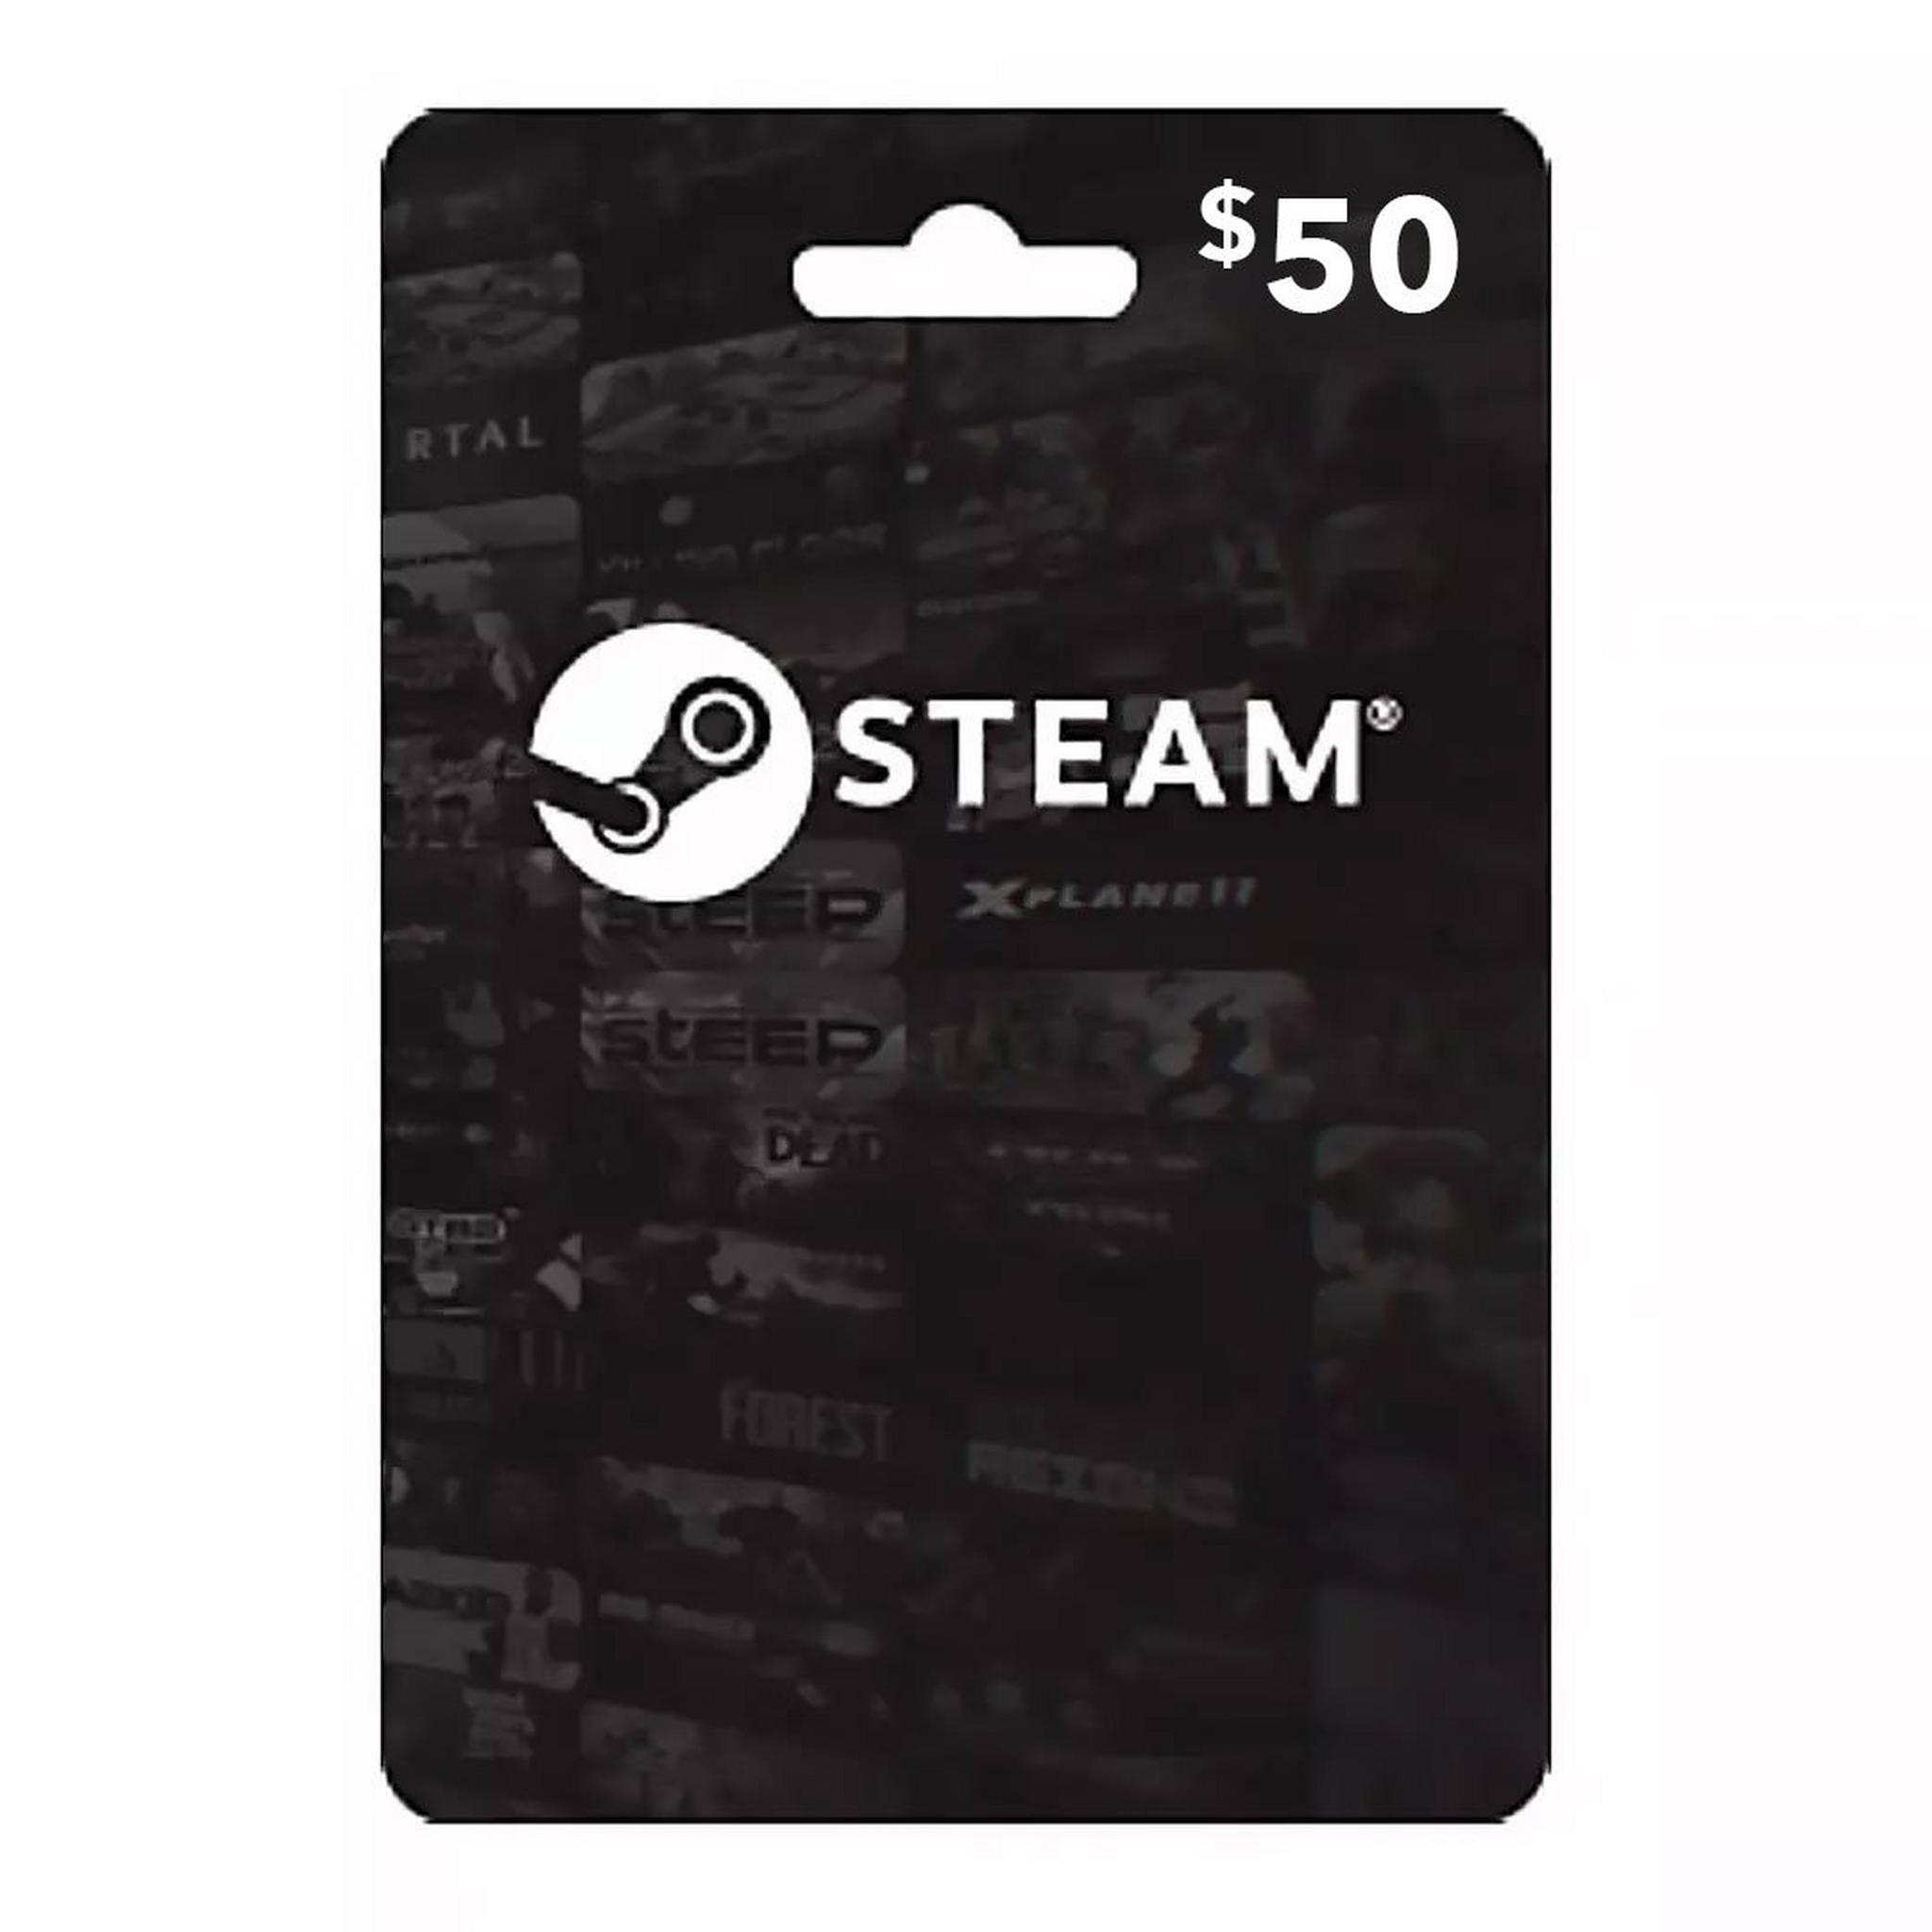 Steam Wallet Cards - $50